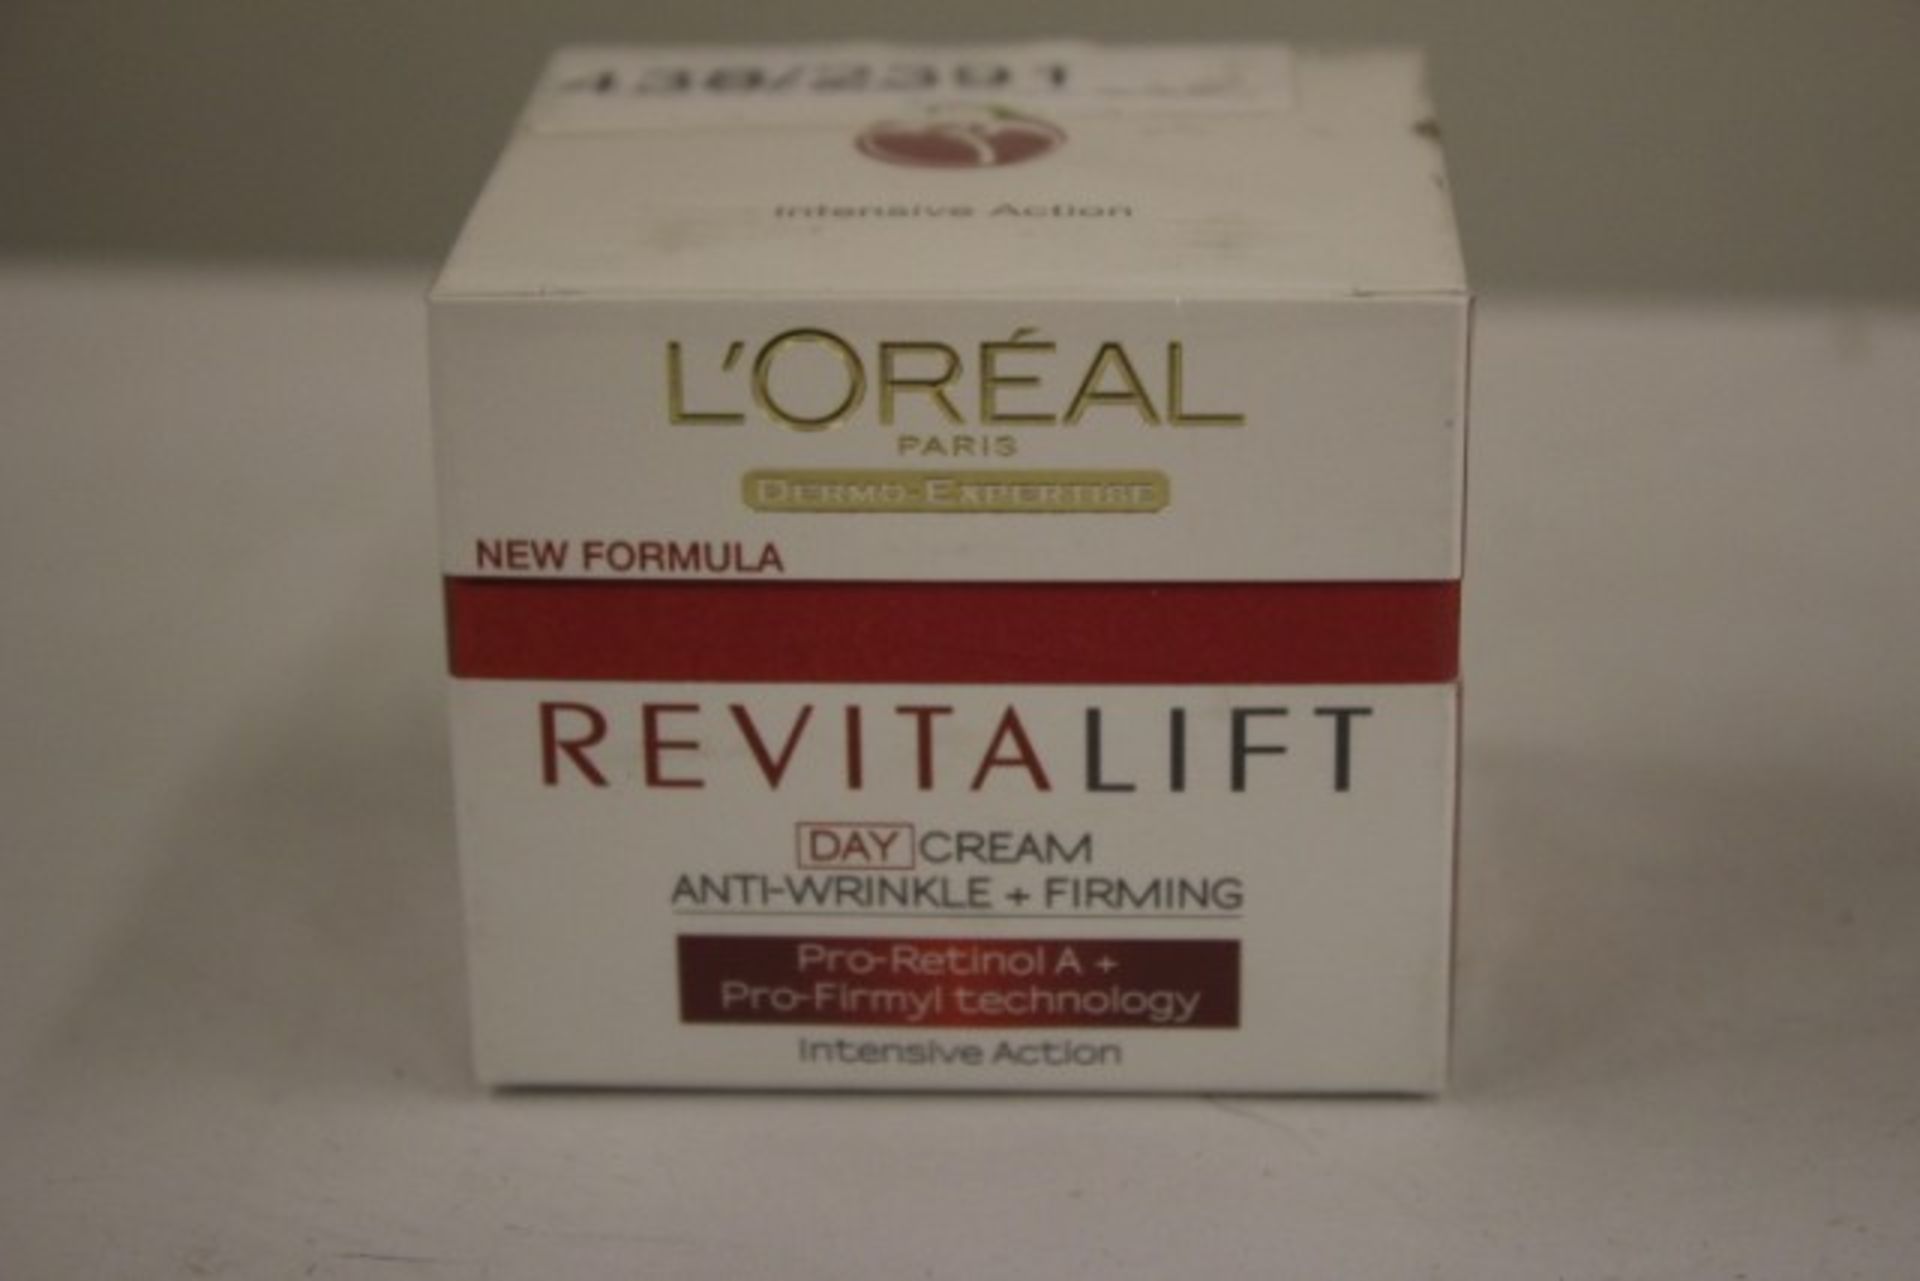 + VAT Brand New L'Oreal Dermo-Expertise Revitalift Anti-Wrinkle + Firming Day Cream 50ml ISP £11.00